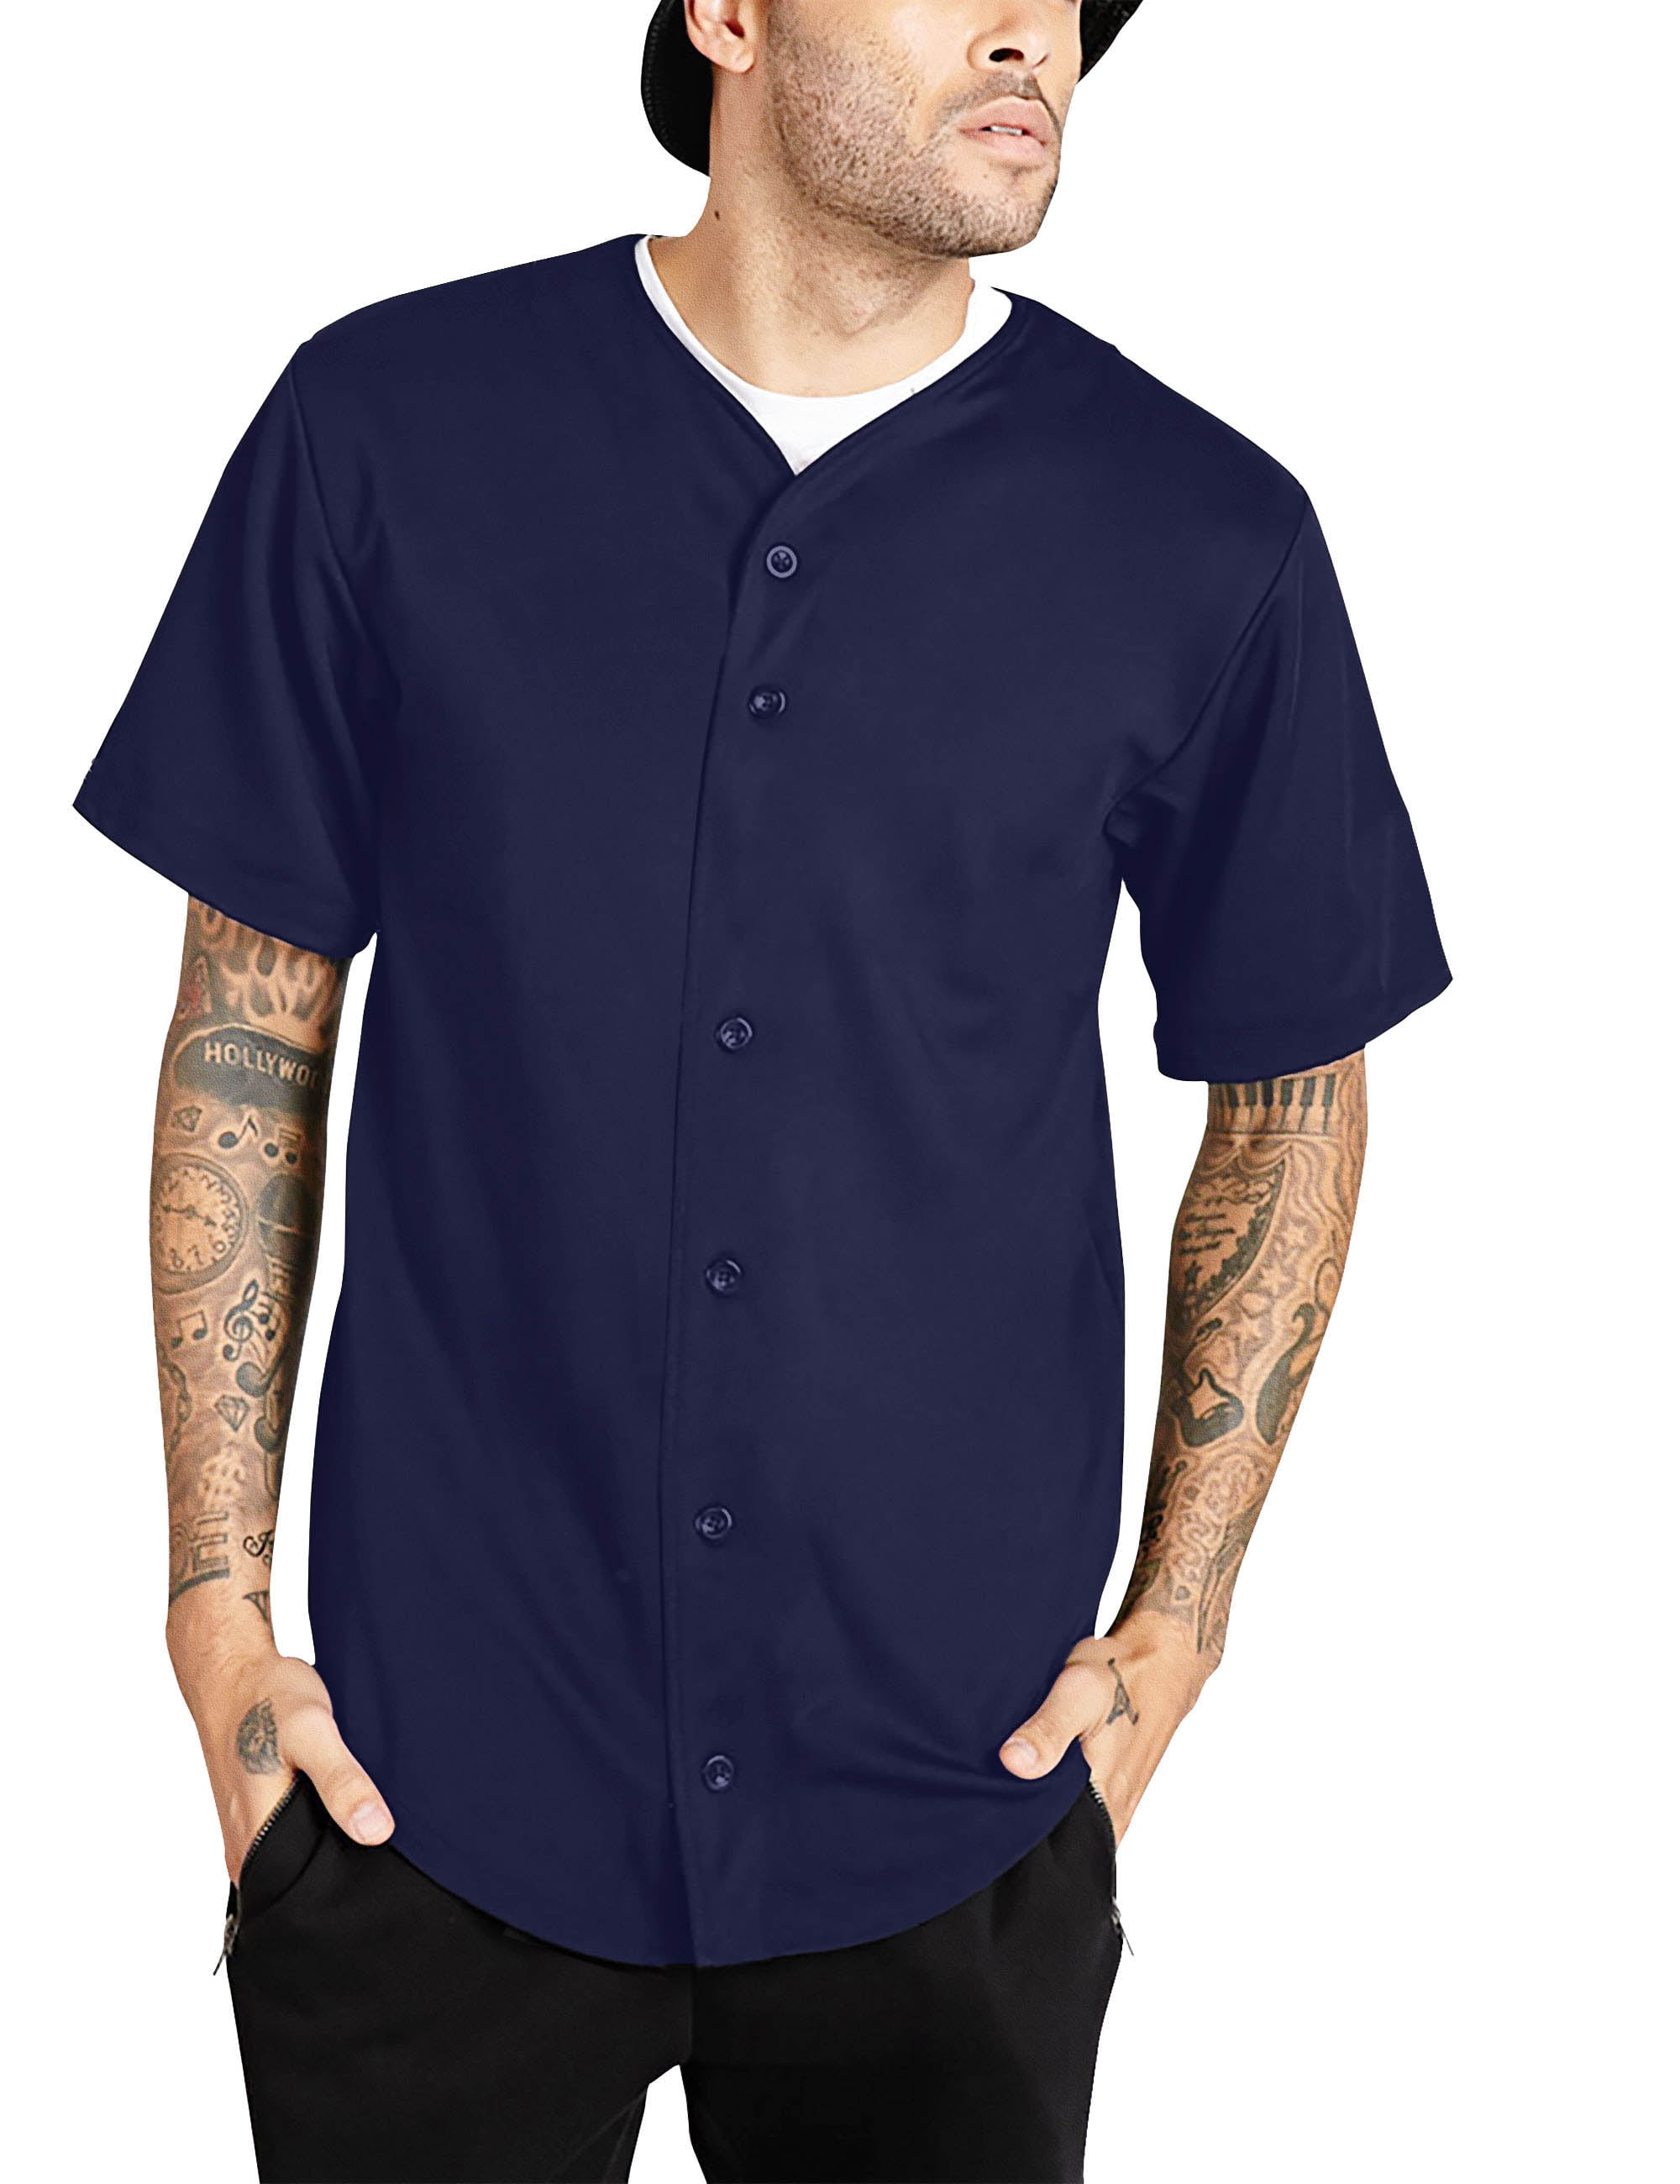 Baseball Jersey T-shirt Full Button Tee Men Blue NWT 